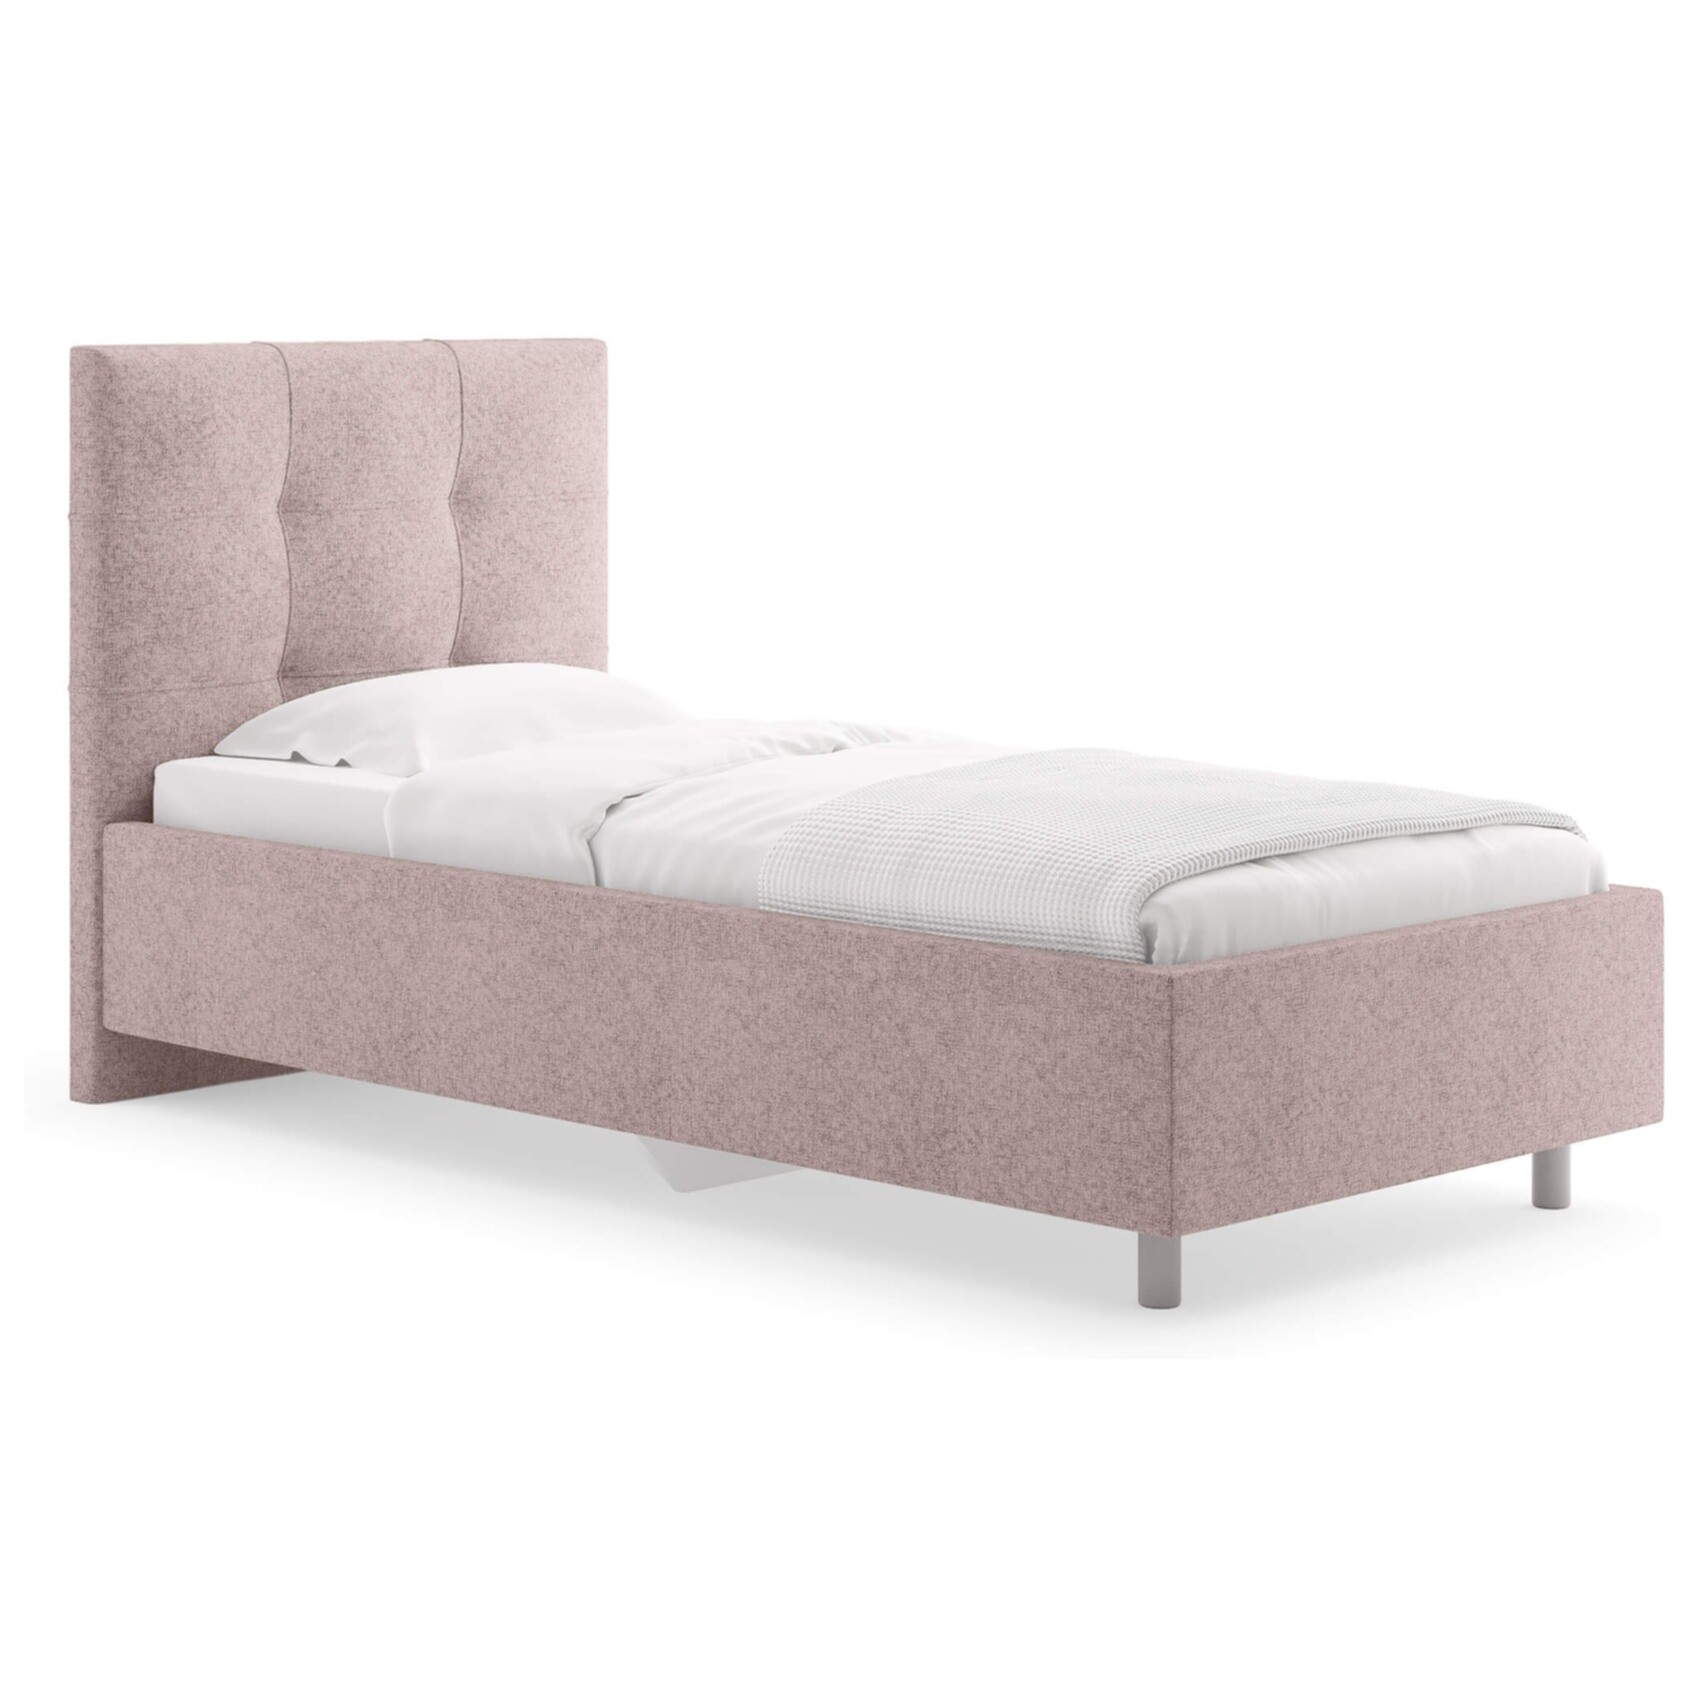 Кровать с мягким изголовьем односпальная 90х190 см кашемир розовая Caprice